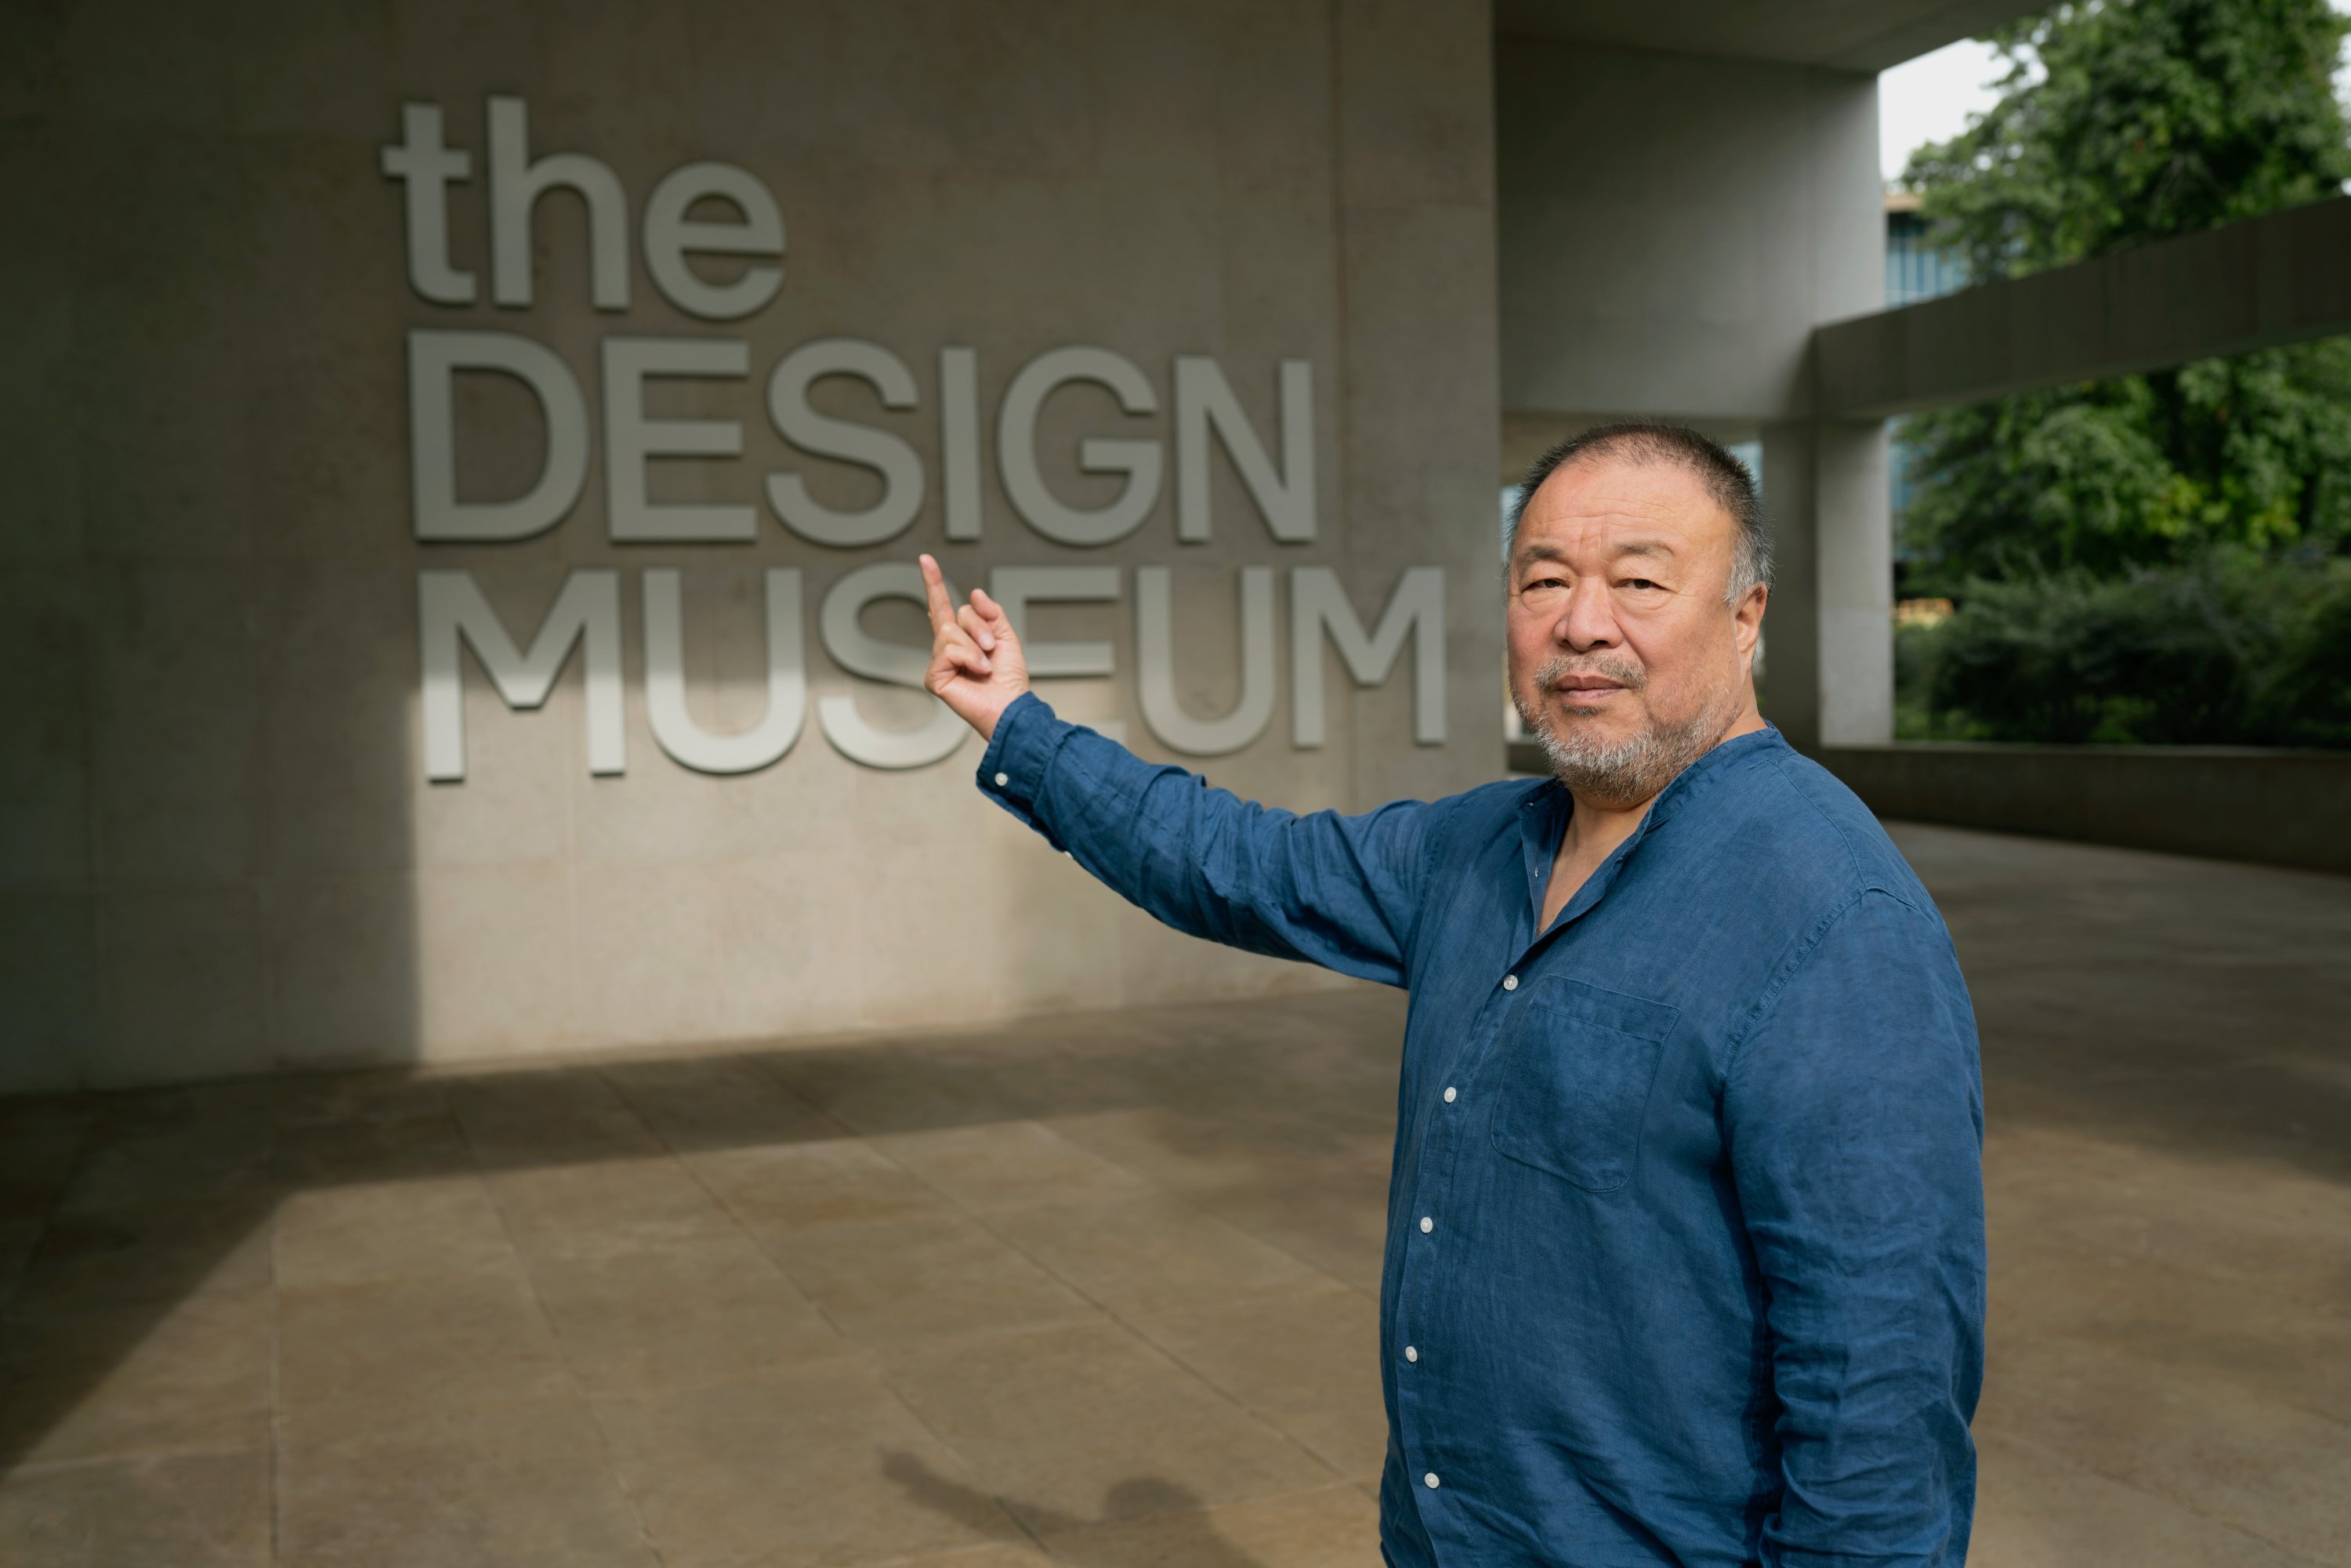 Seniman Tiongkok Ai Weiwei mengatakan pameran berbasis koleksinya yang akan datang di Museum Desain di London menceritakan lebih banyak cerita tentang masa lalu dan masa kini daripada barang antik tunggal, London, Inggris, 30 Januari 2023. (Foto dpa)